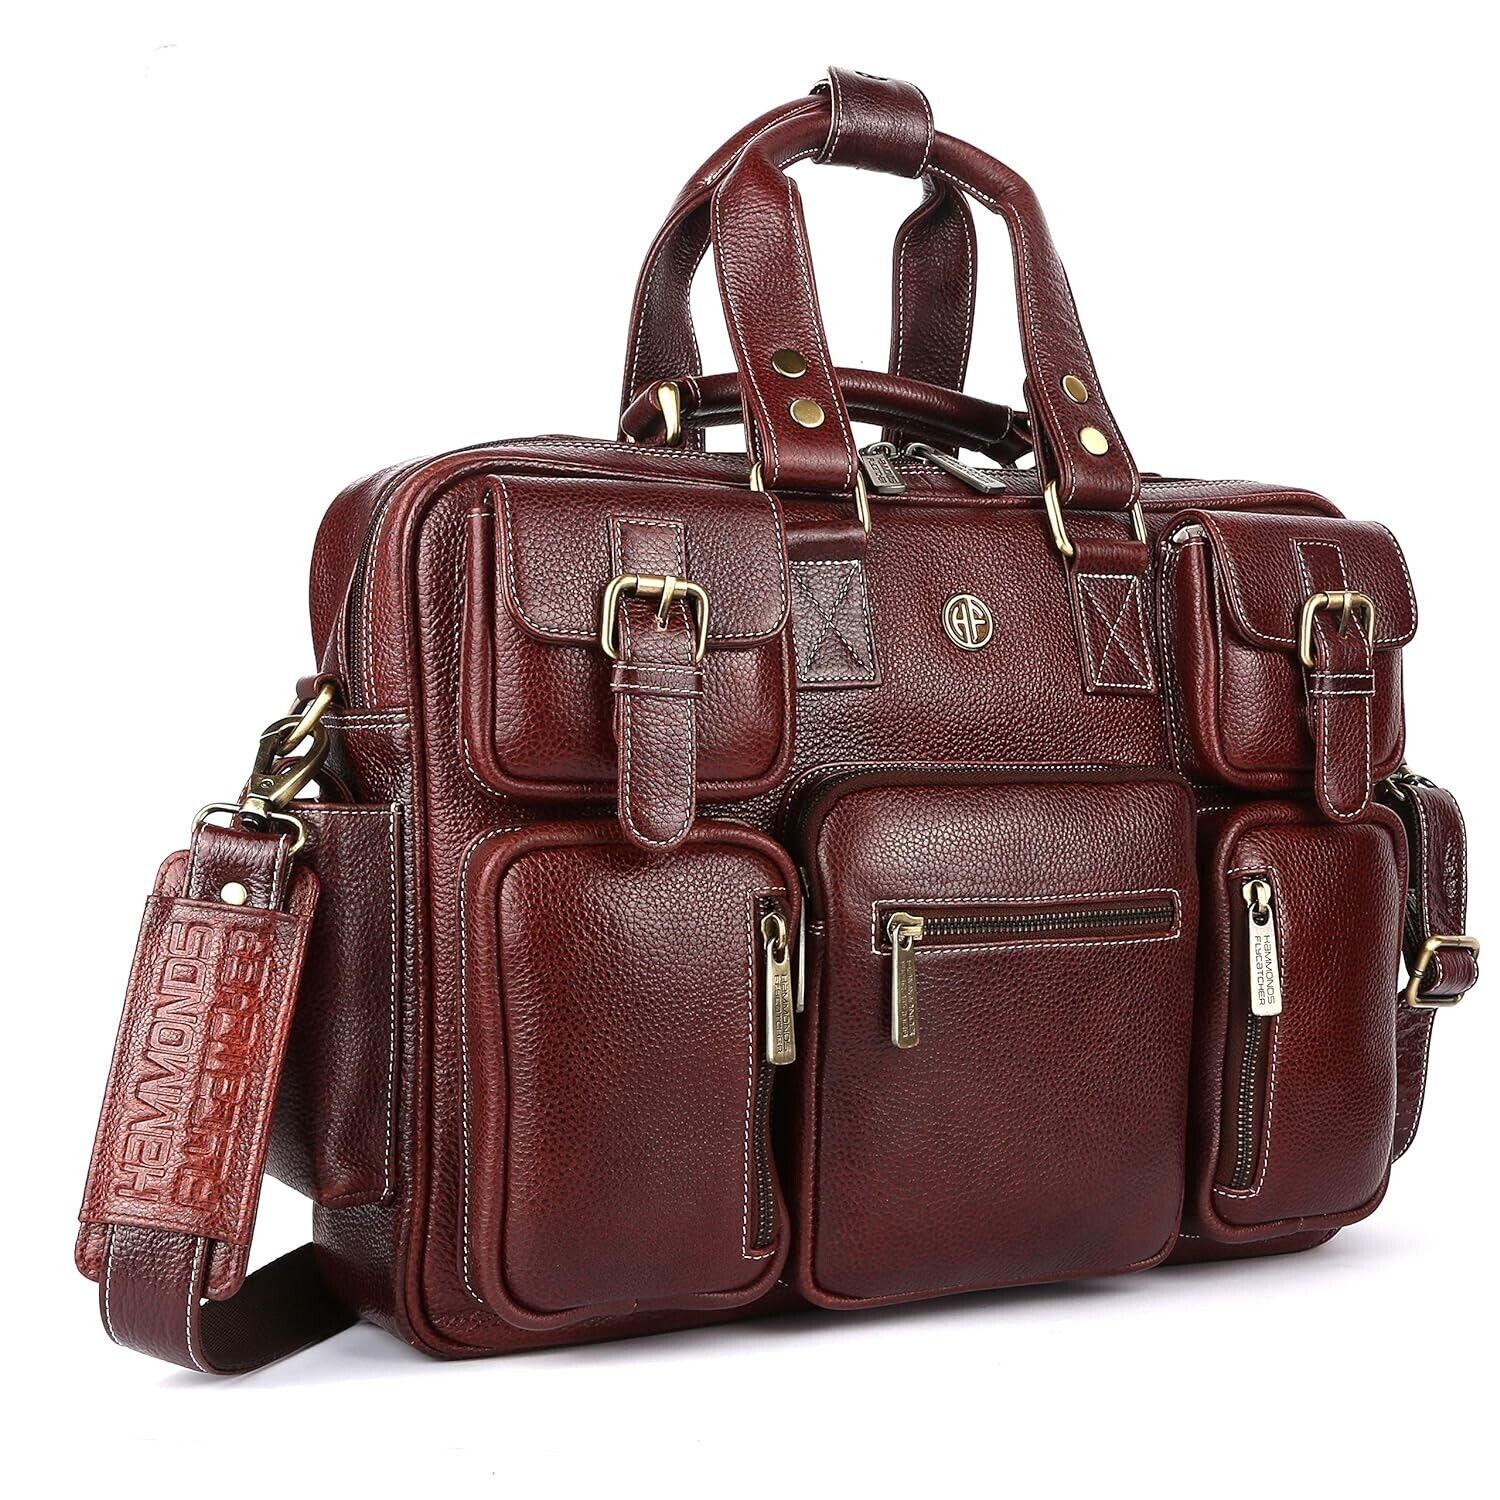 Men's Genuine Leather Laptop Messenger Shoulder Bag for Work and Travel (Brown)